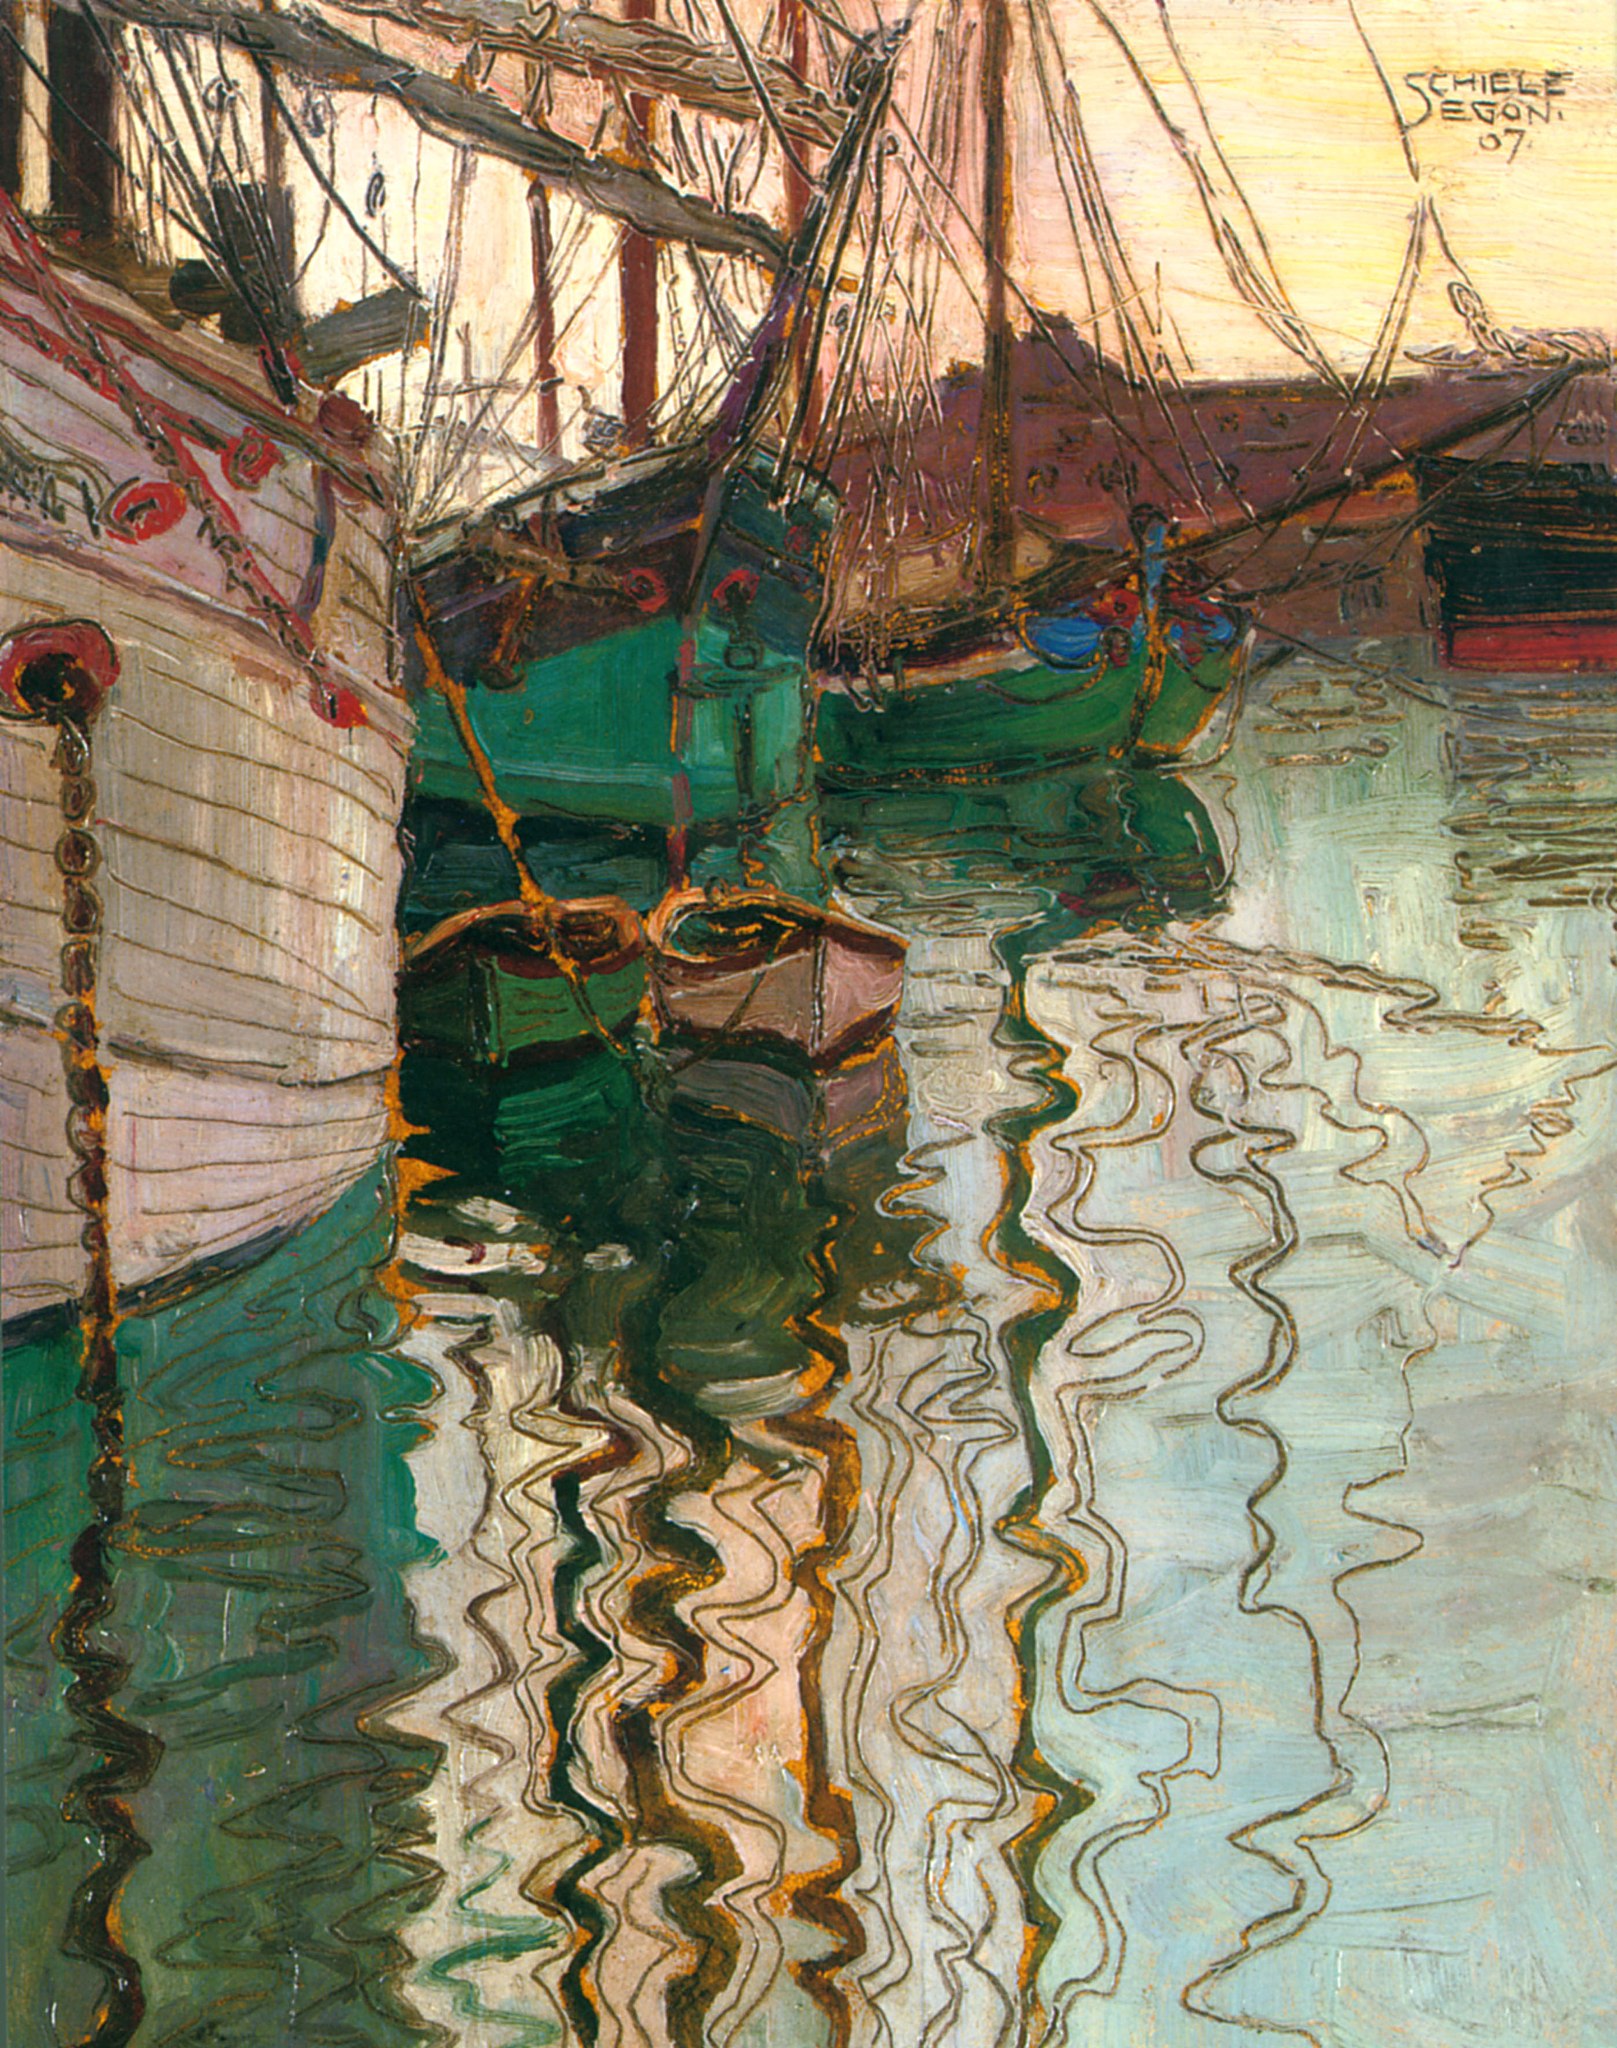 ميناء ترييستي by Egon Schiele - 1907 - الأبعاد: 24.6x18 سم 